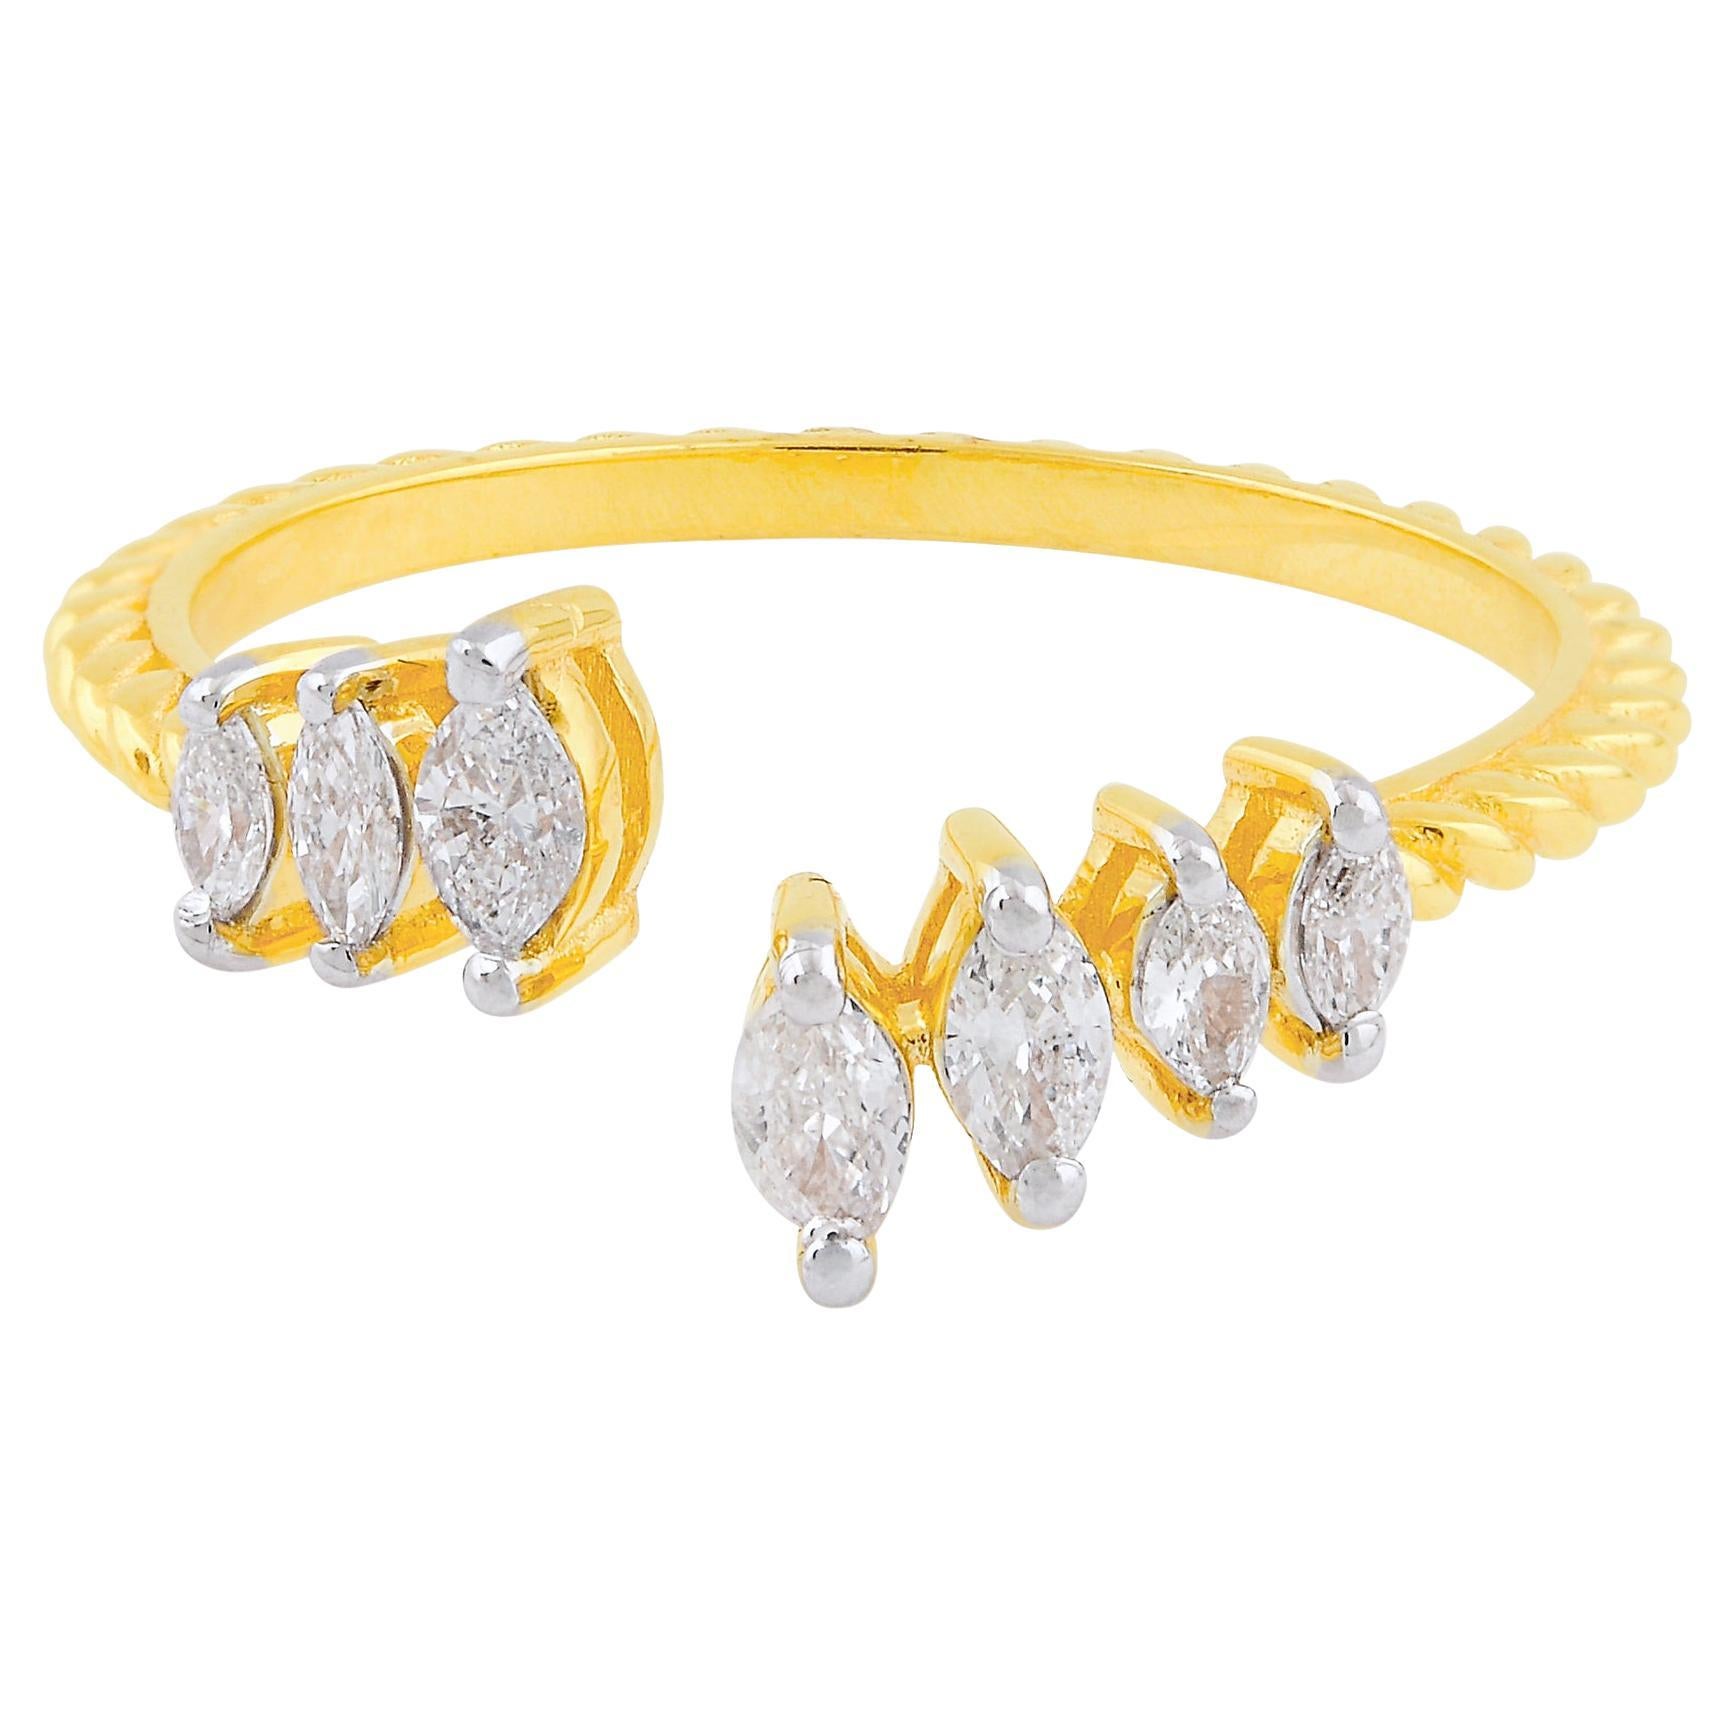 Bague manchette en or jaune 18 carats avec diamants marquises naturels de 0,30 carat